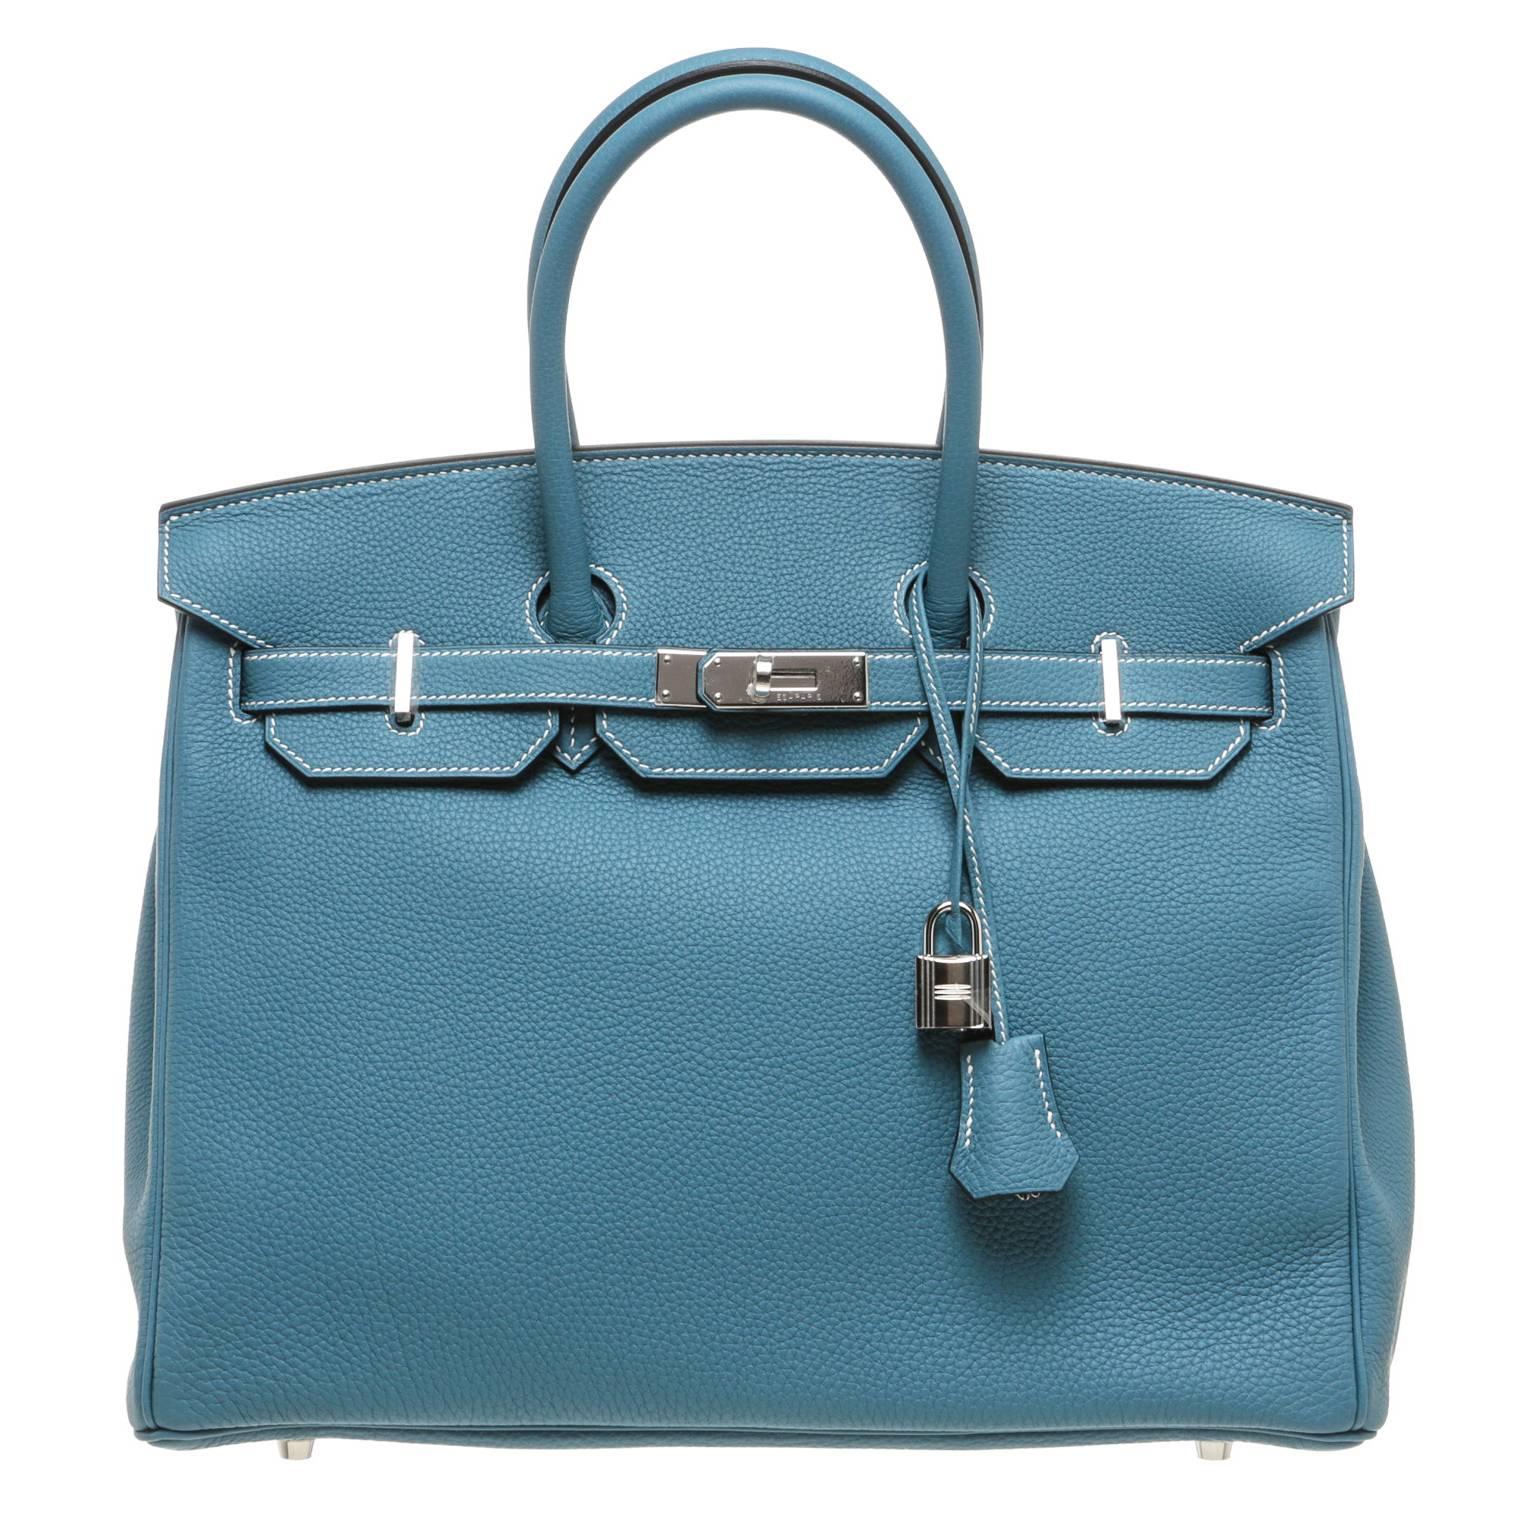 Hermes Bleu Jean Togo Leather Birkin 35cm Handbag SHW For Sale